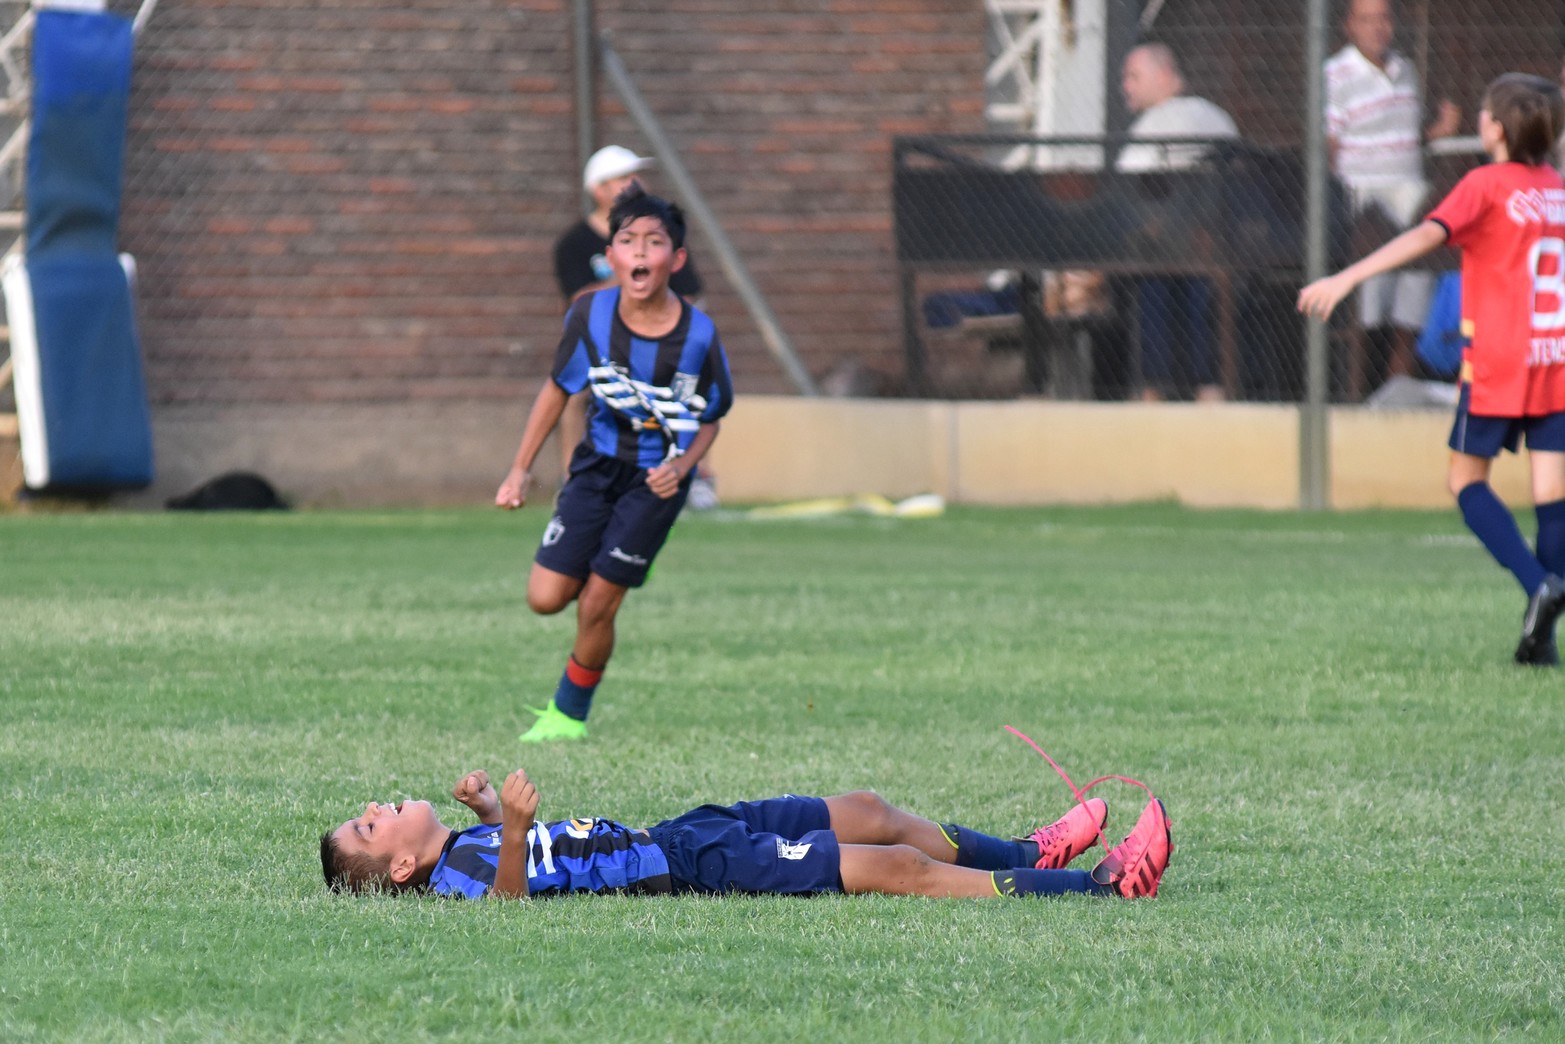 Se puso en marcha el torneo Tiburoncito de fútbol infantil que organiza El Quillá y que se desarrolla en las instalaciones que la institución posee en el Parque del Sur.